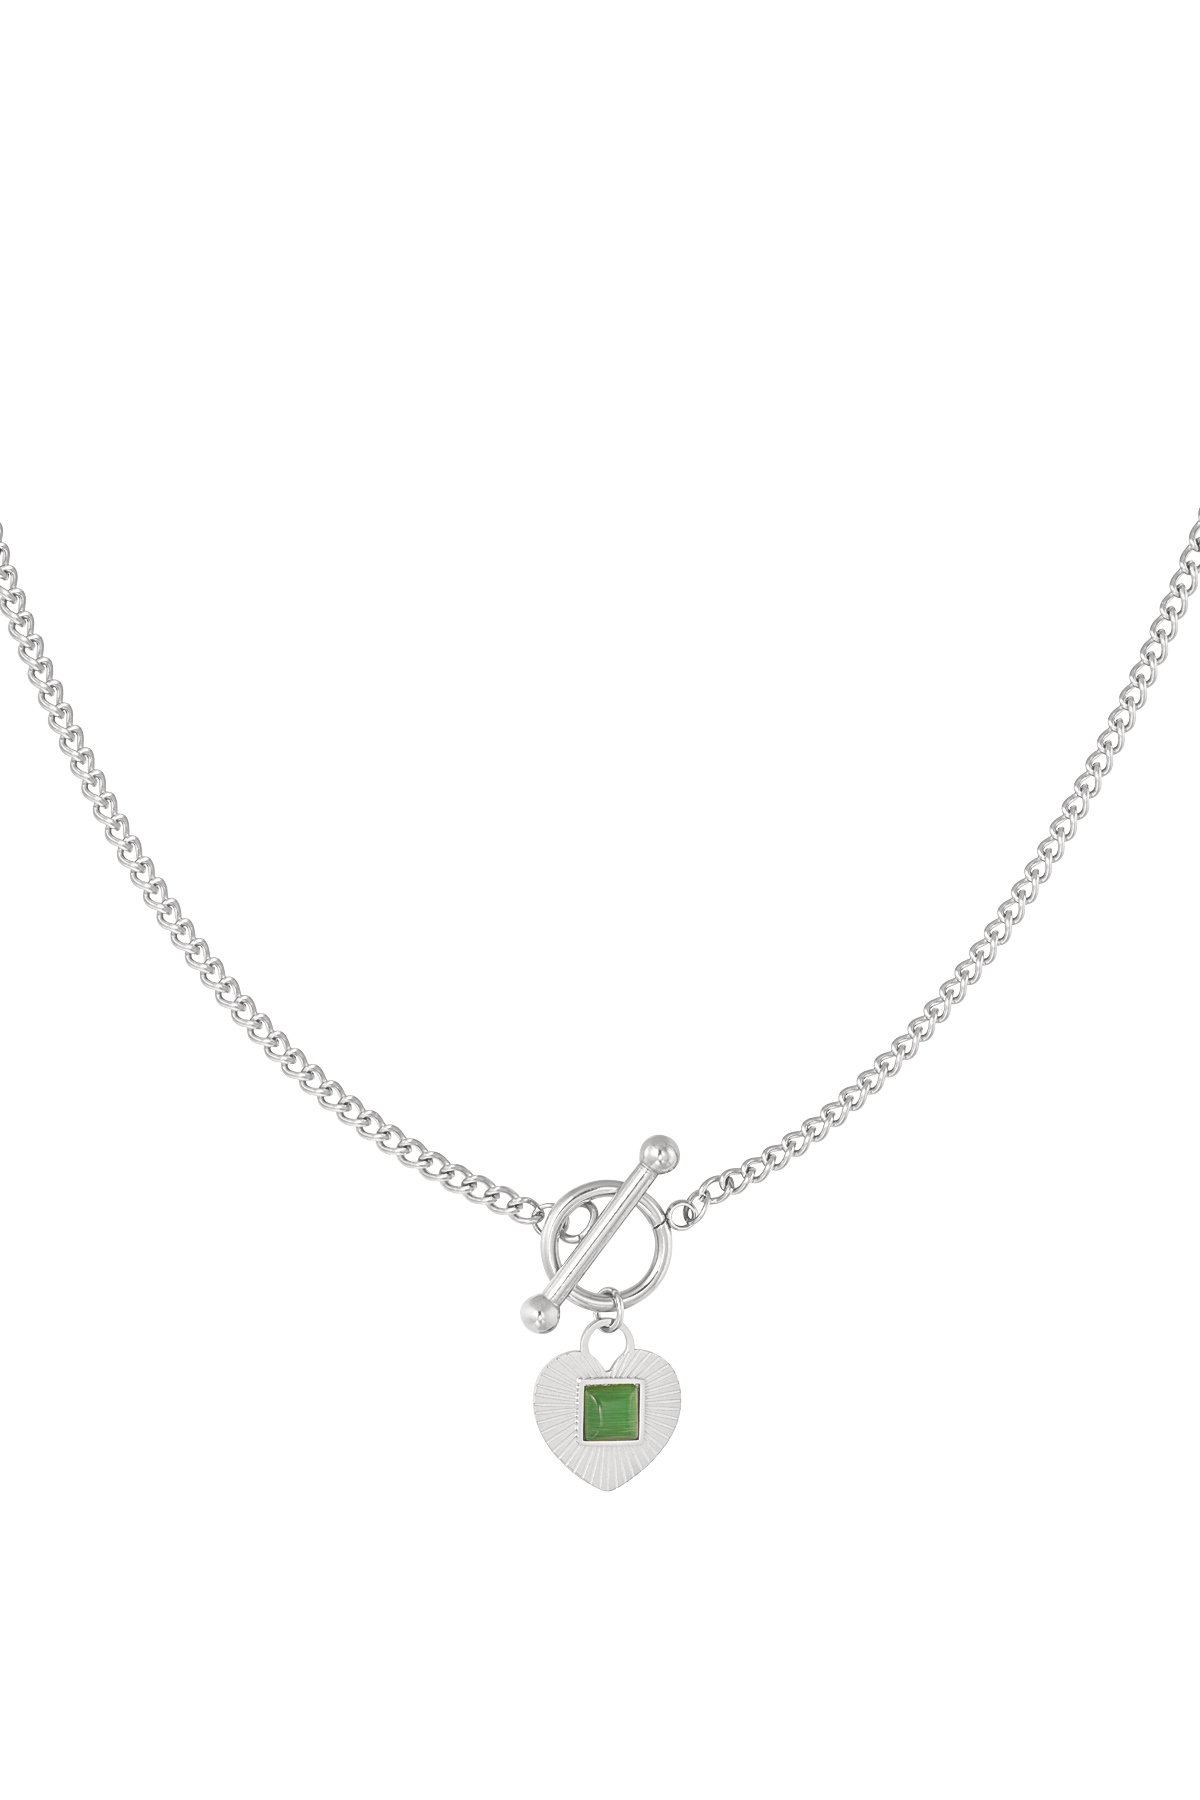 Chiusura tonda con catena e dettaglio cuore verde - argento